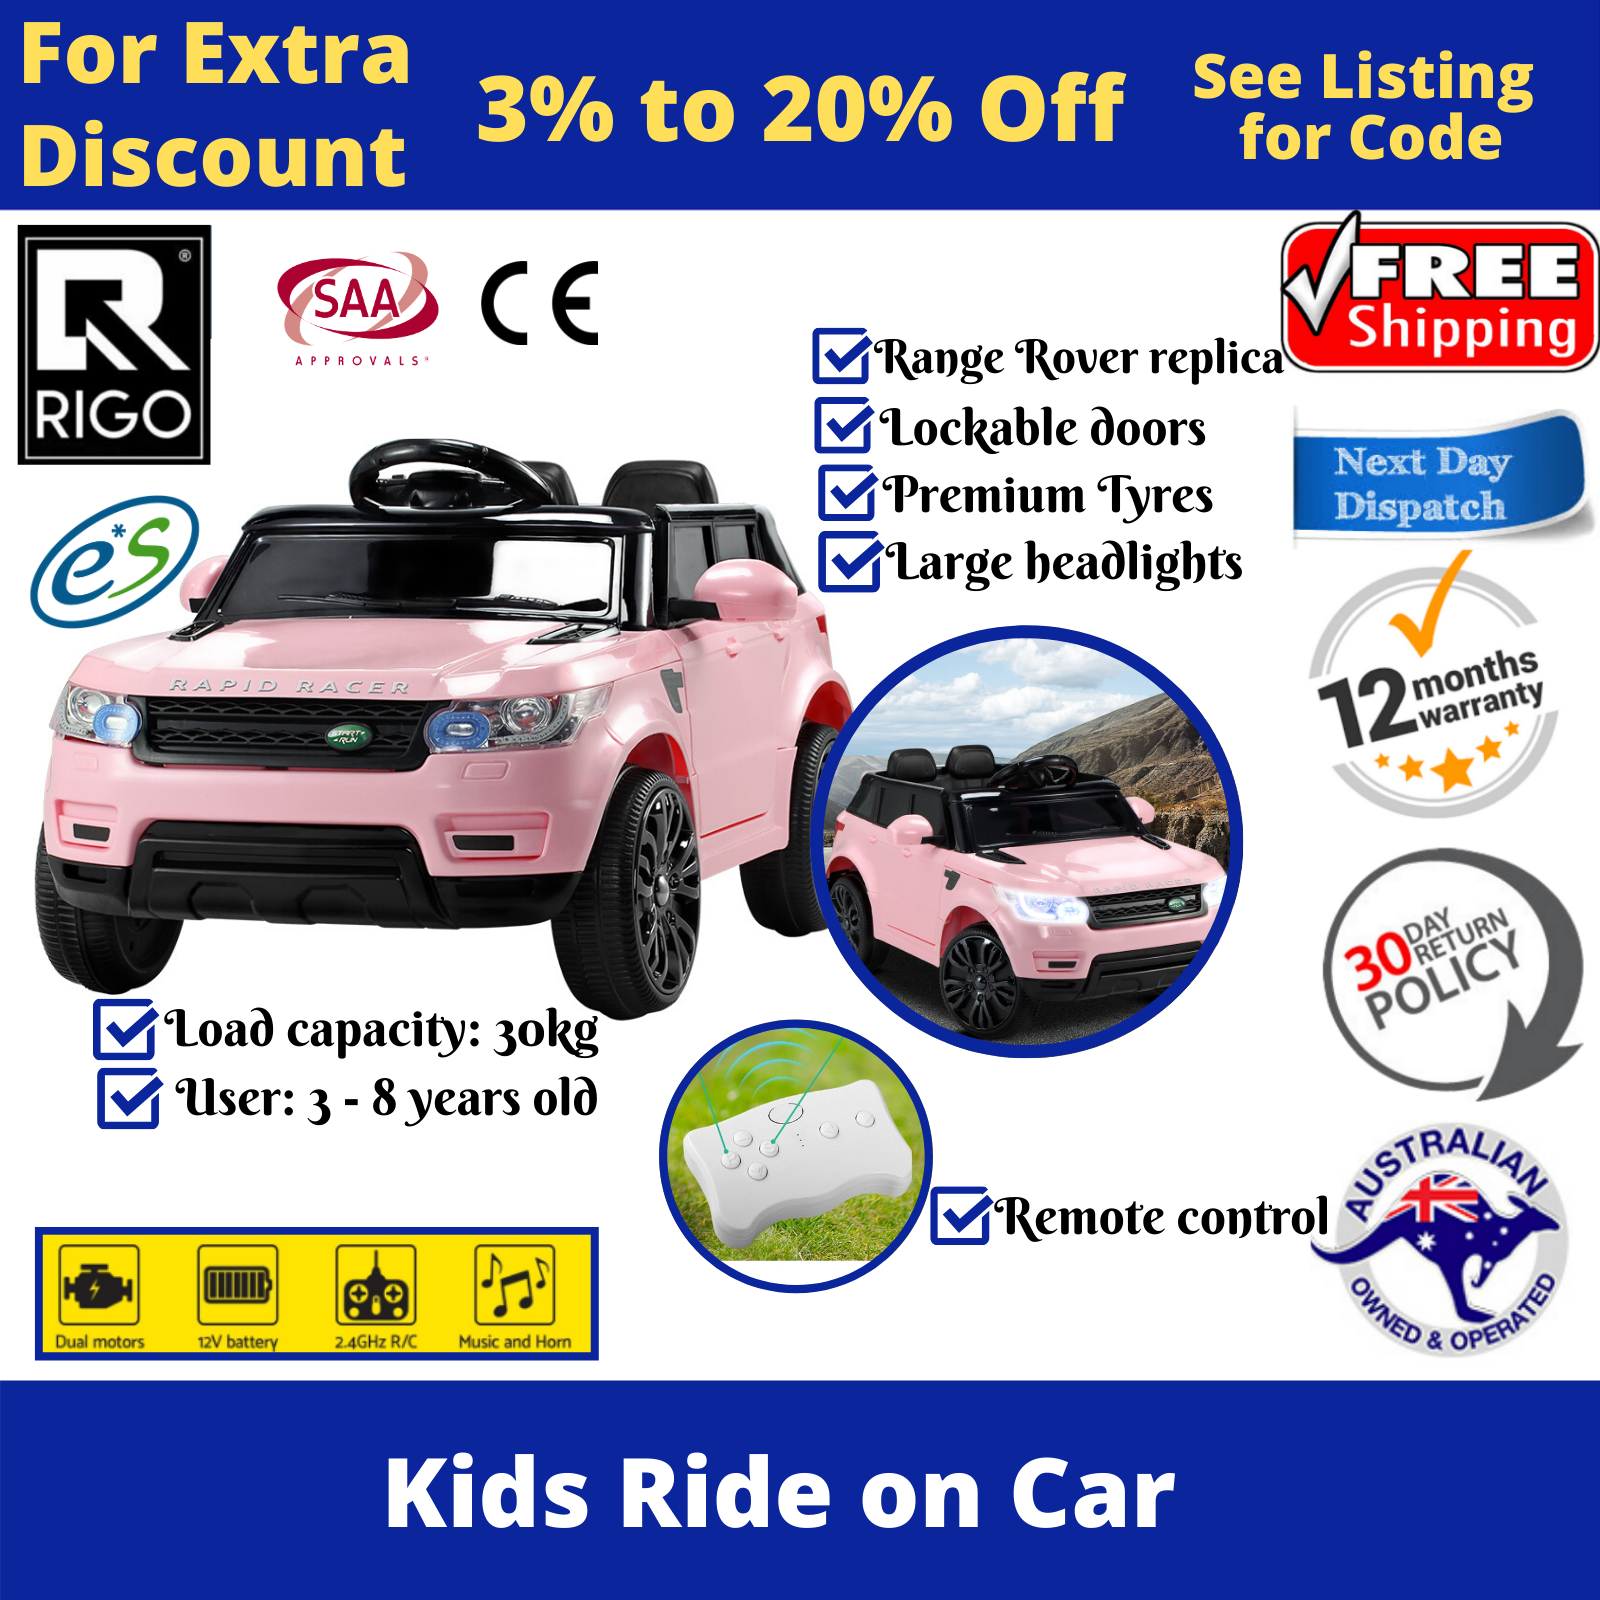 rigo ride on cars